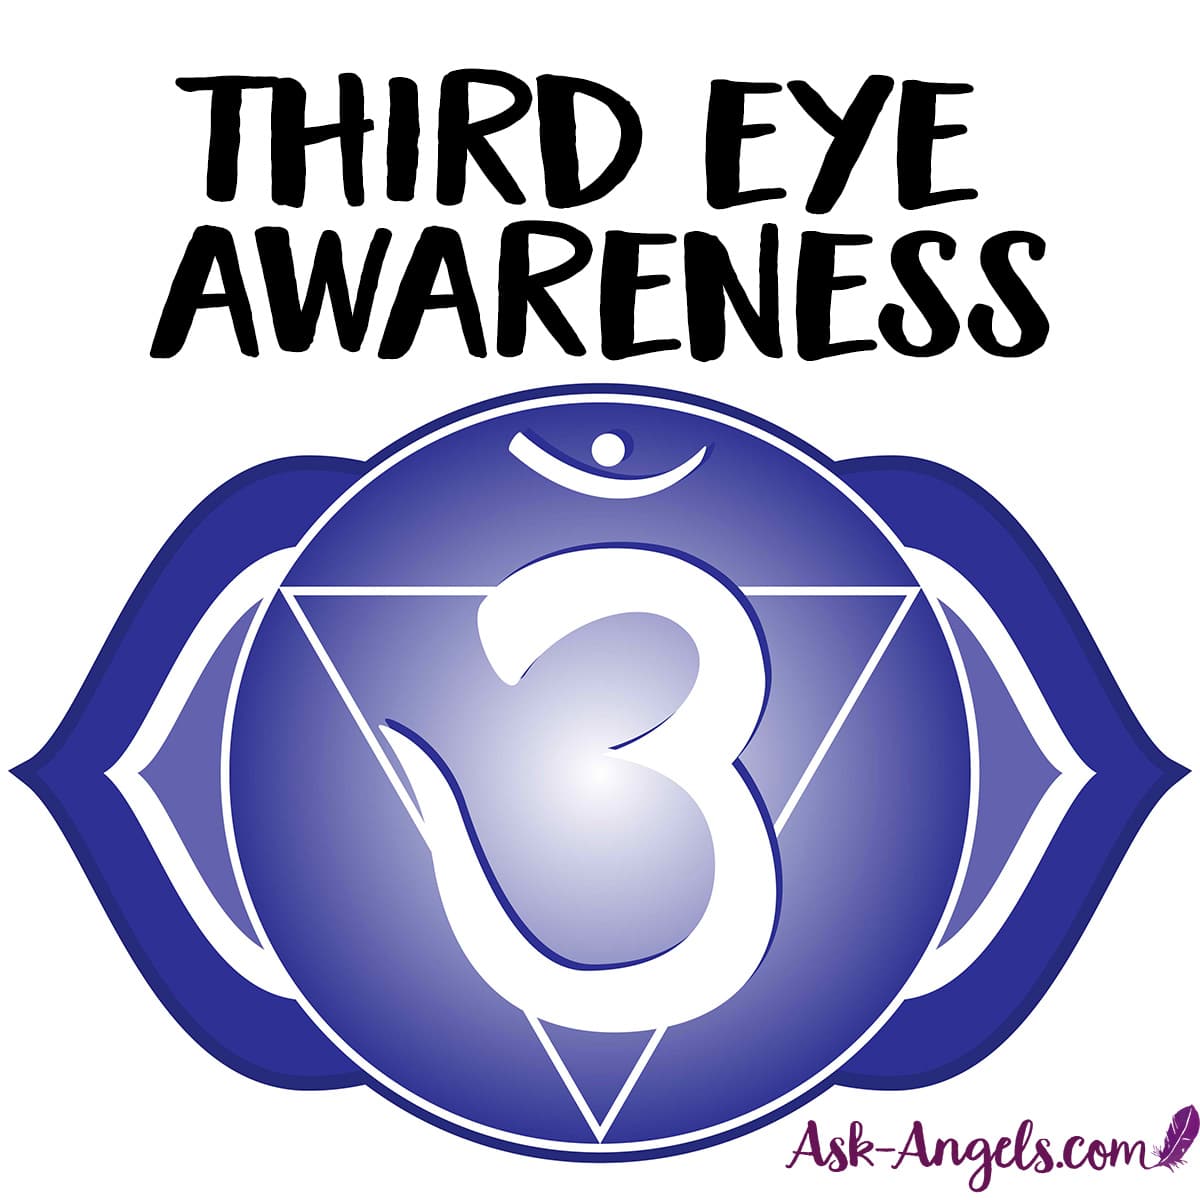 Third Eye Awareness